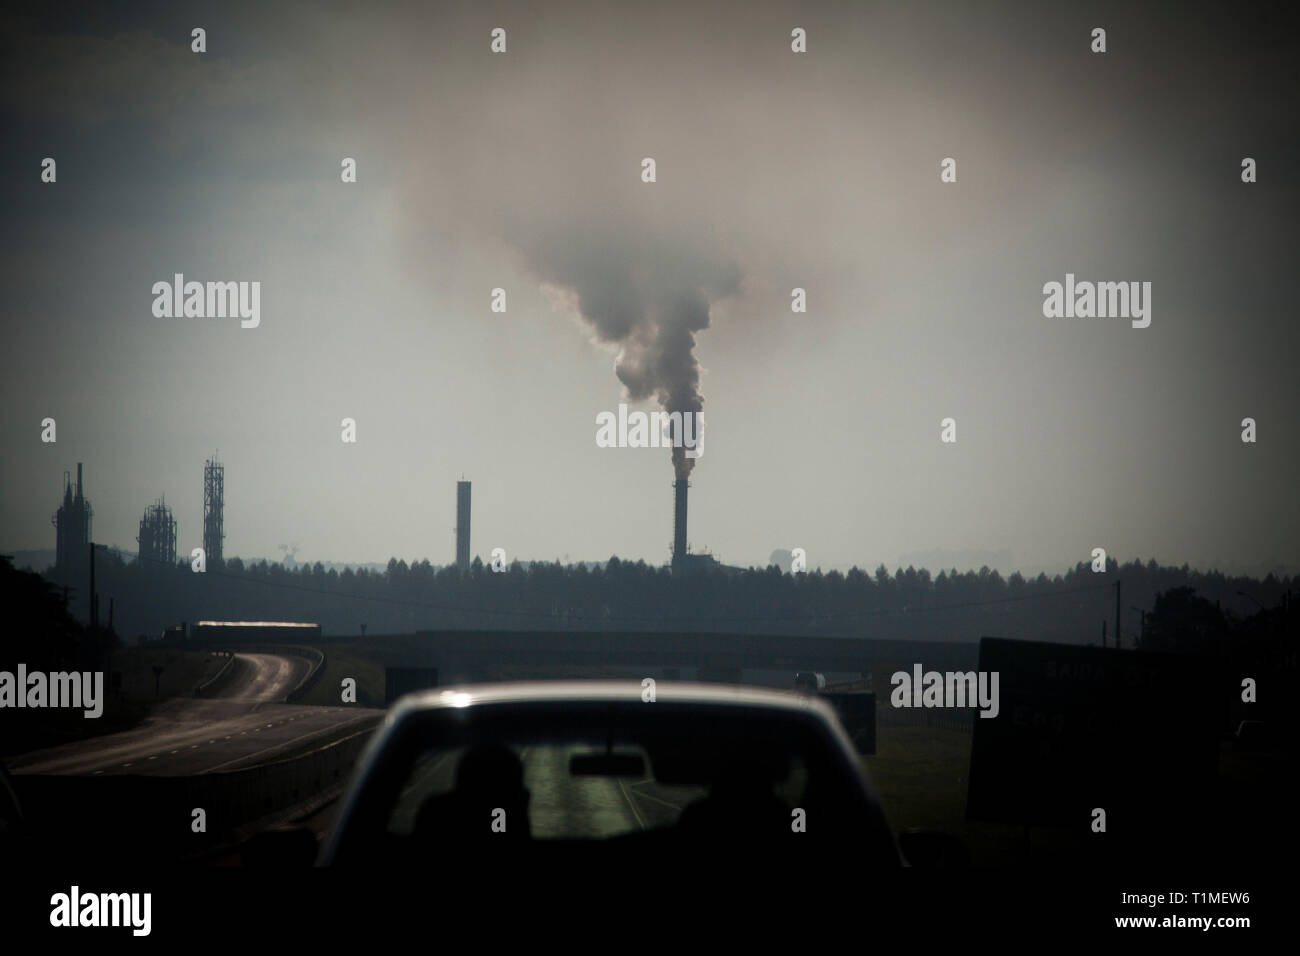 La contaminación industrial en la región de Ribeirao Preto, el mundo mayor polo productivo de etanol y azúcar. El estado de Sao Paulo, Brasil. Foto de stock